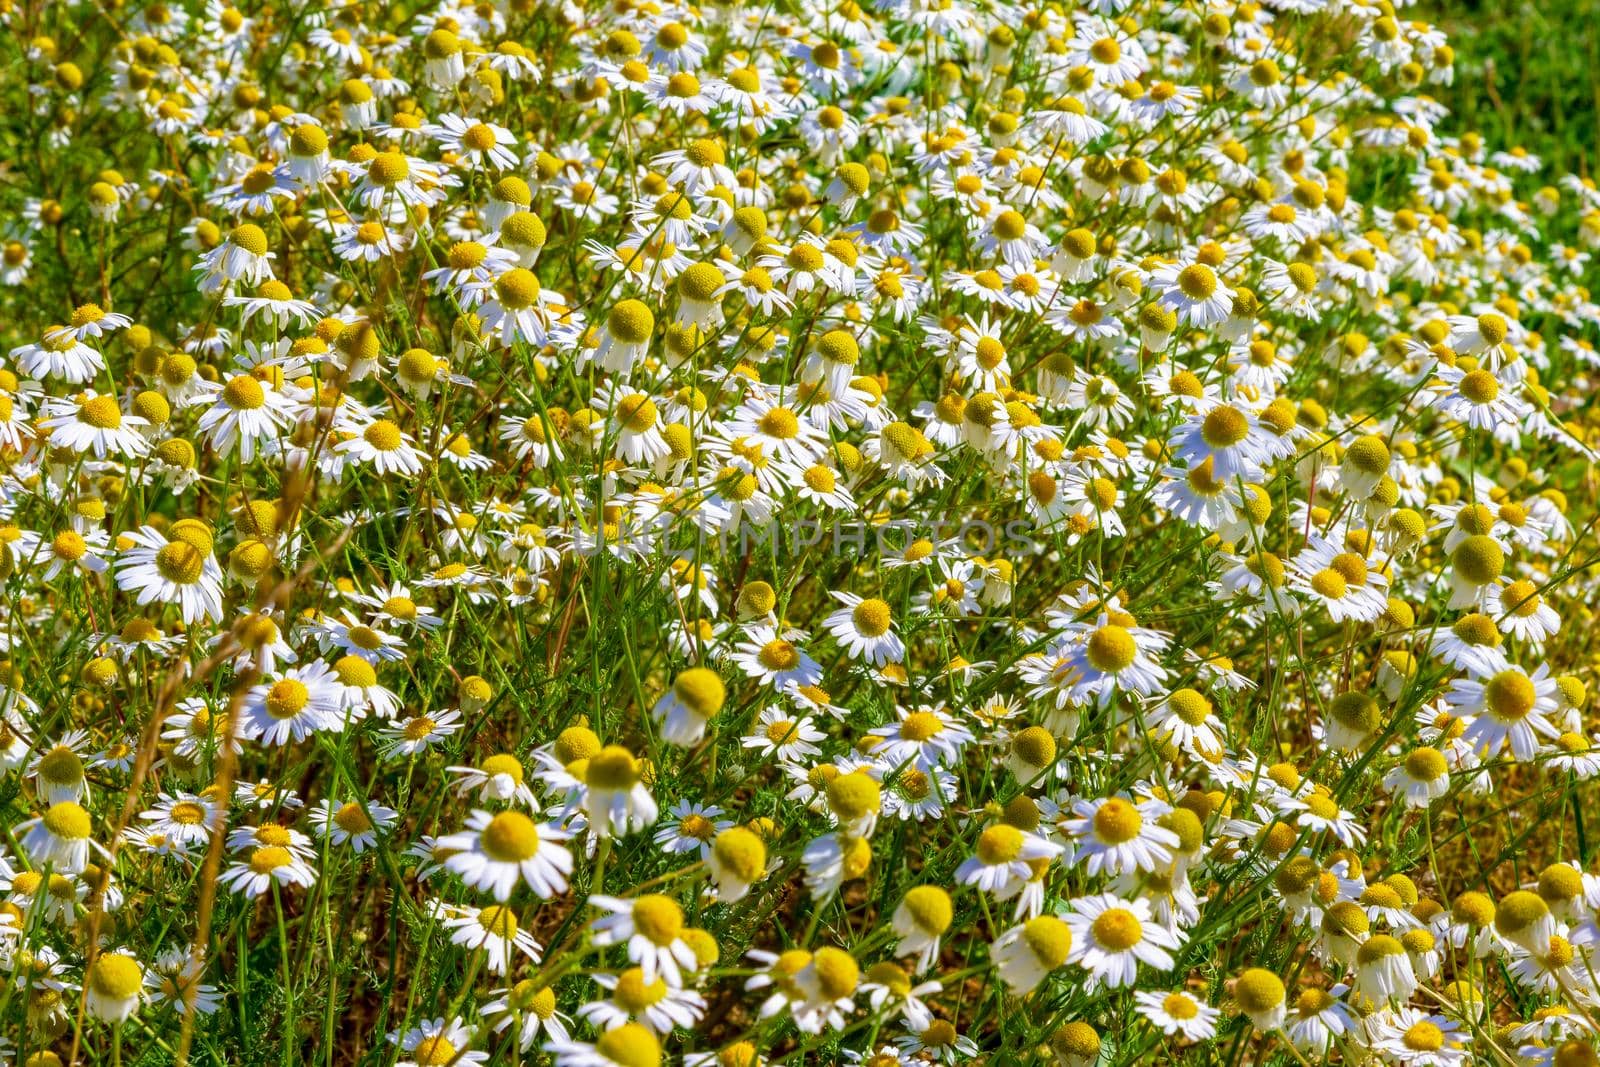 Chamomile blooms in the field by kolesnikov_studio